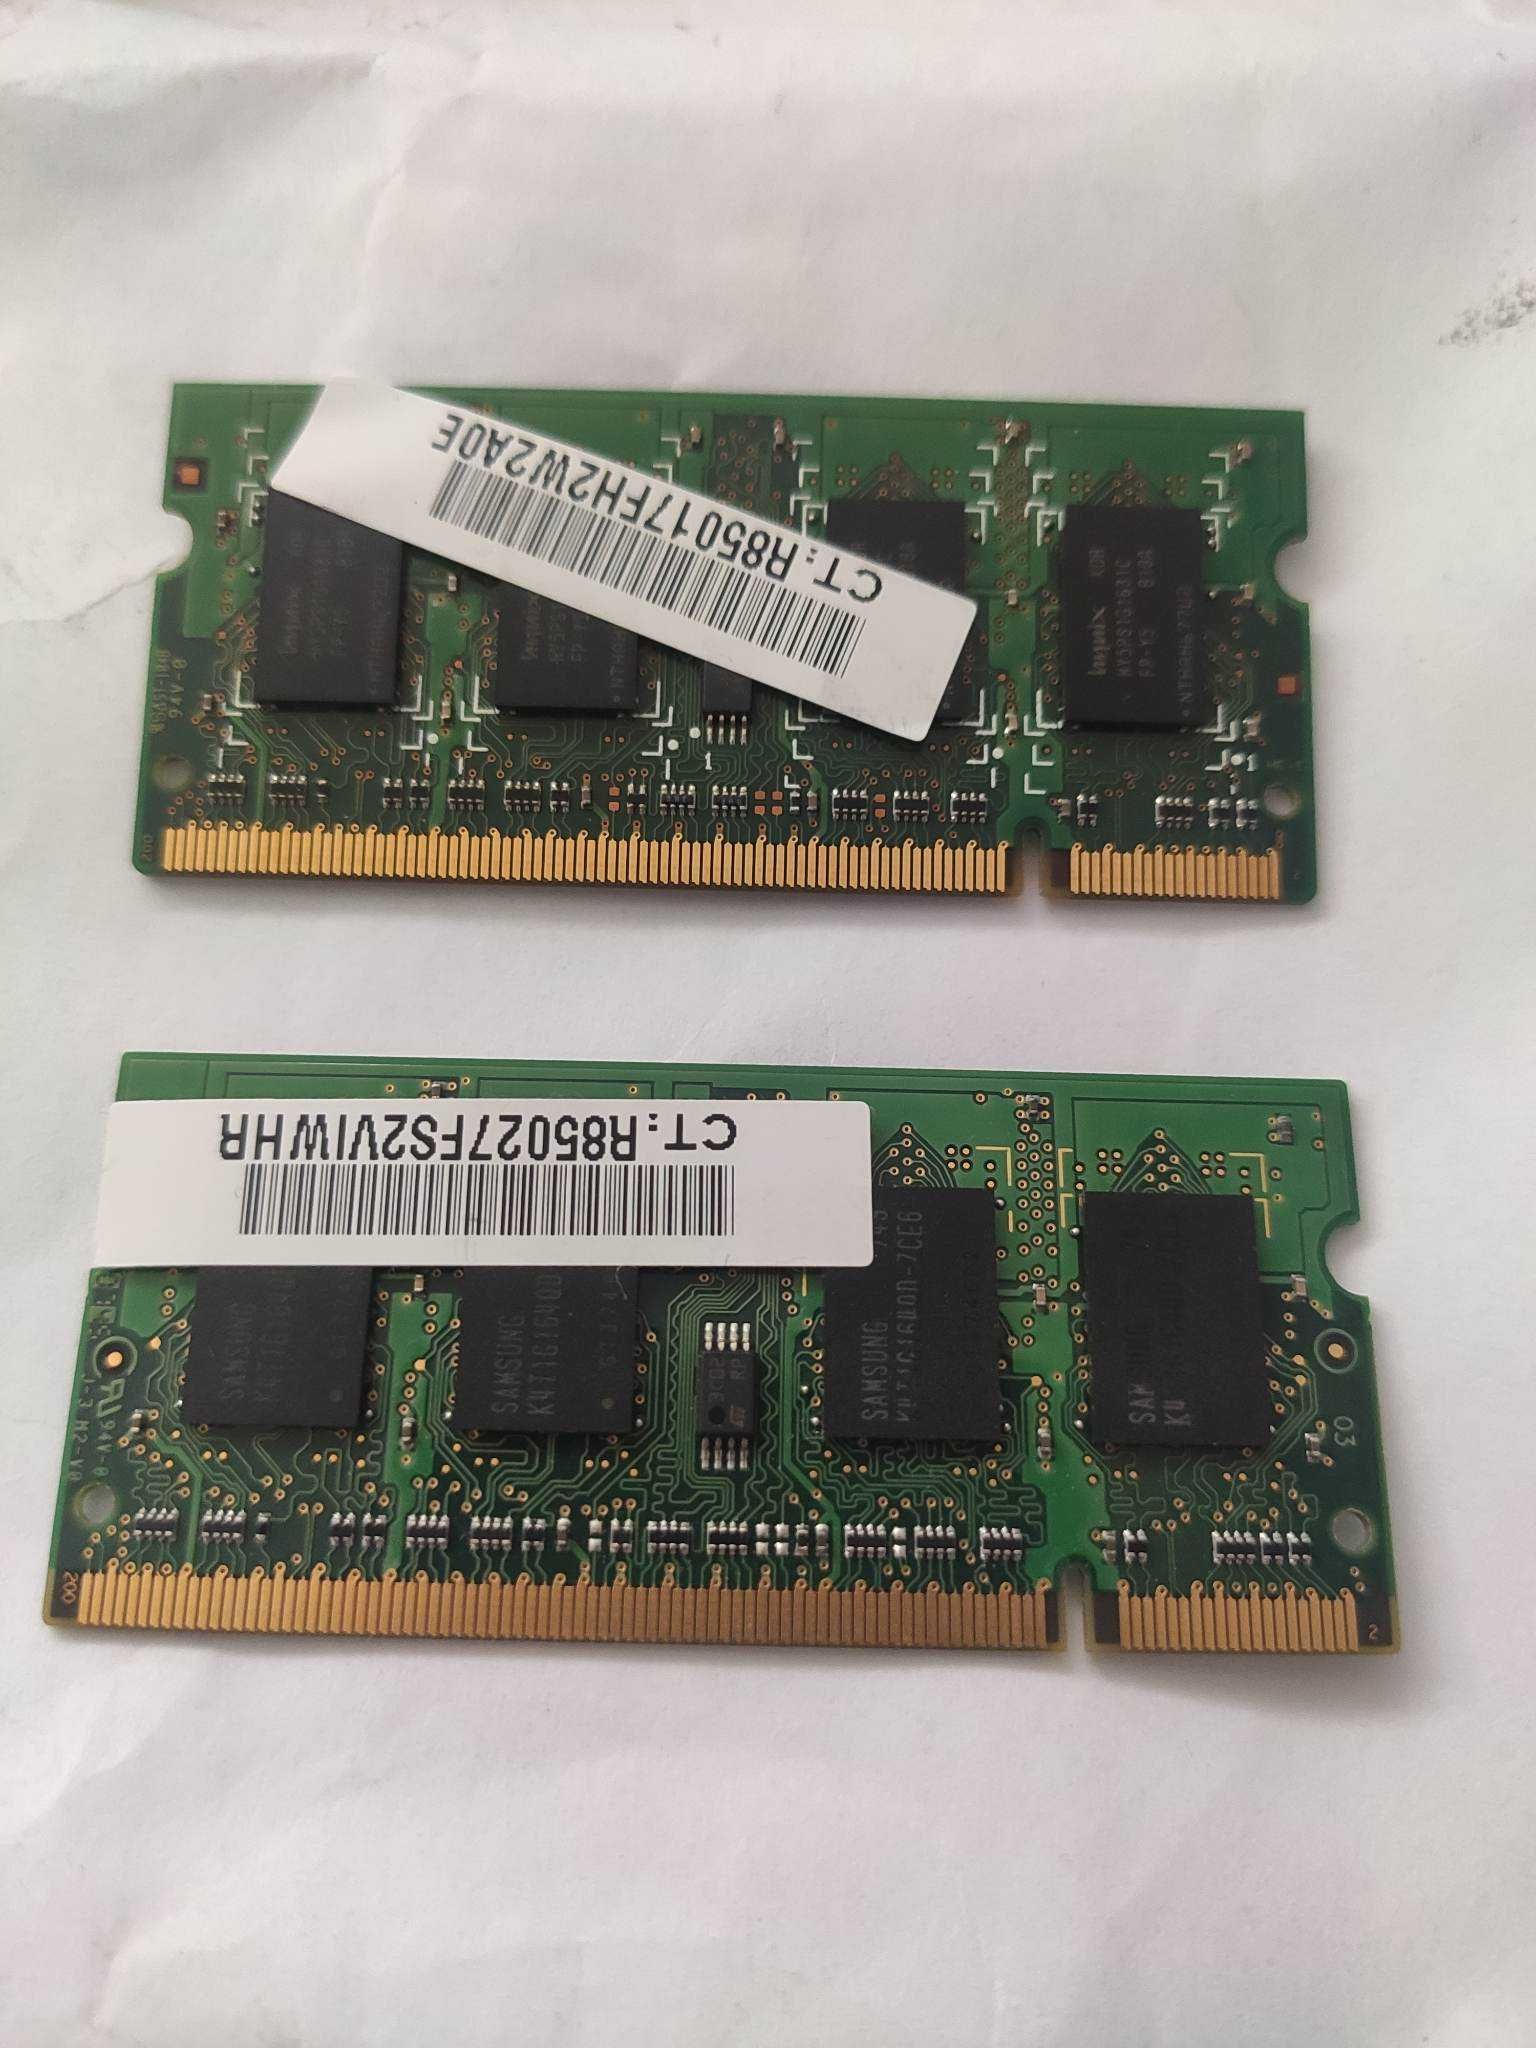 Pamięć RAM DDR2 2x1GB do laptopa PC2-5300S Samsung/Hynix